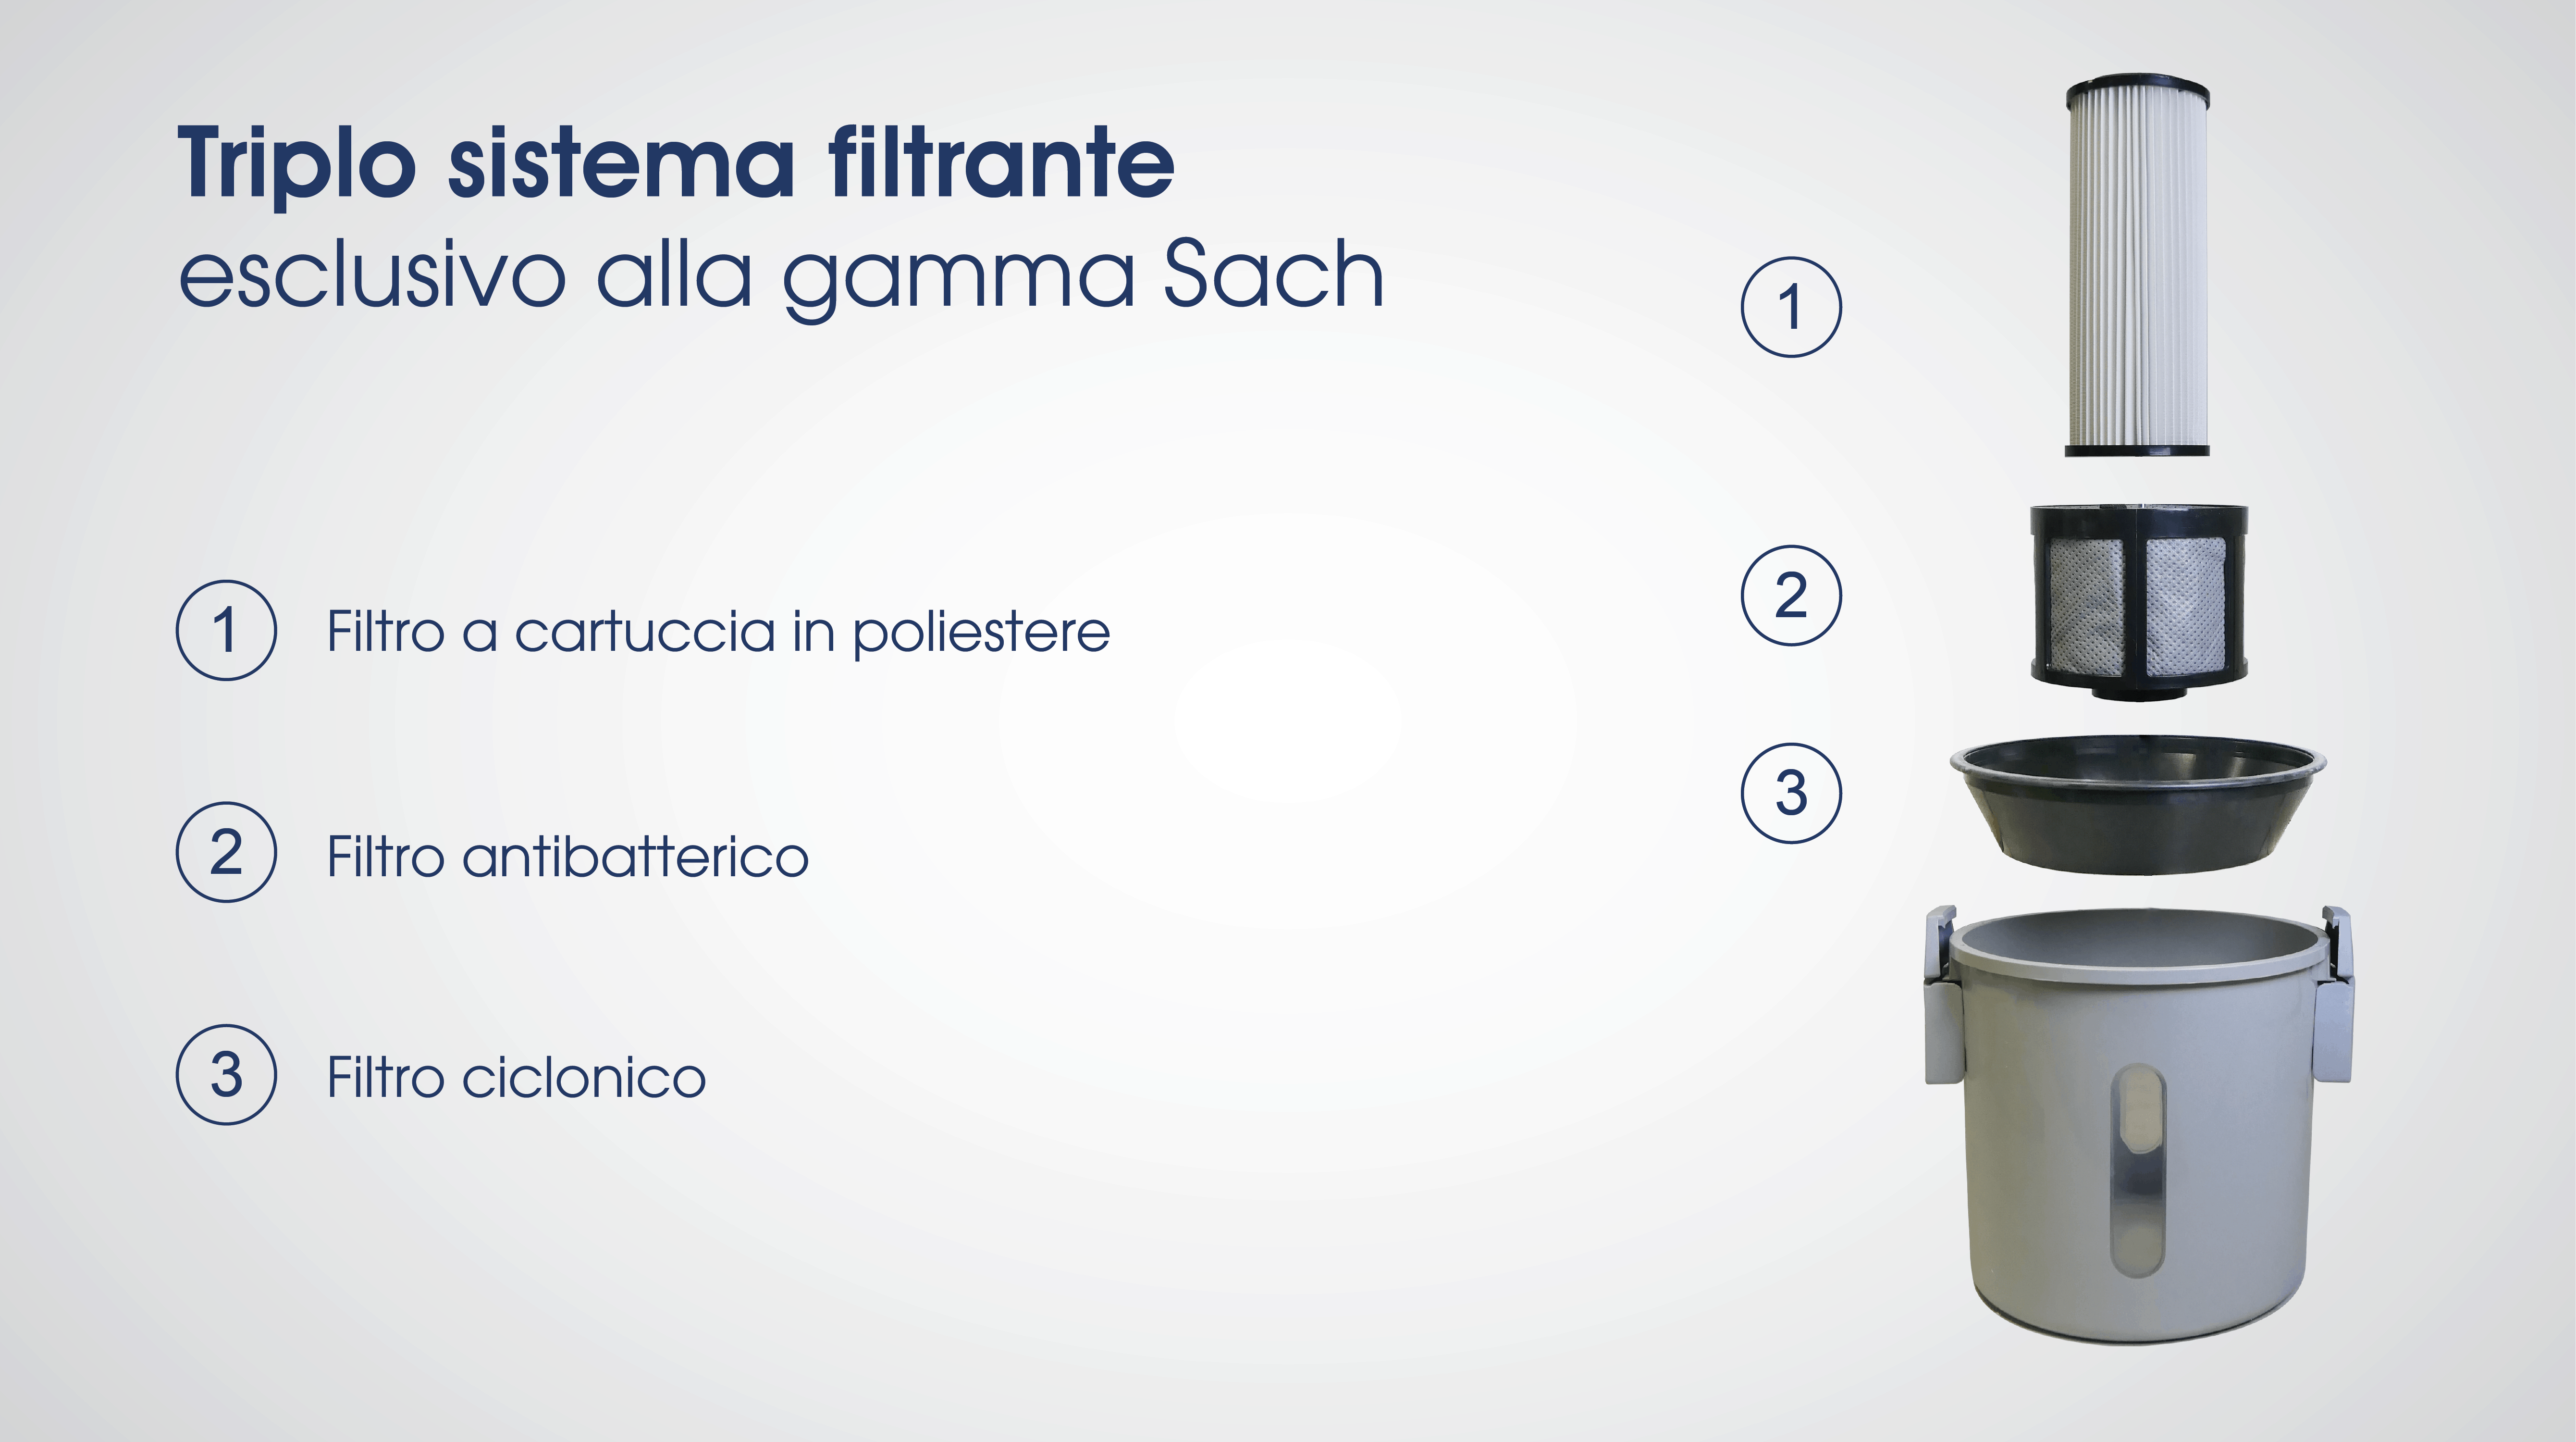 Triplo sistema filtrante esclusivo alla gamma Sach. Filtro a cartuccia in poliestere, filtro antibatterico, filtro ciclonico